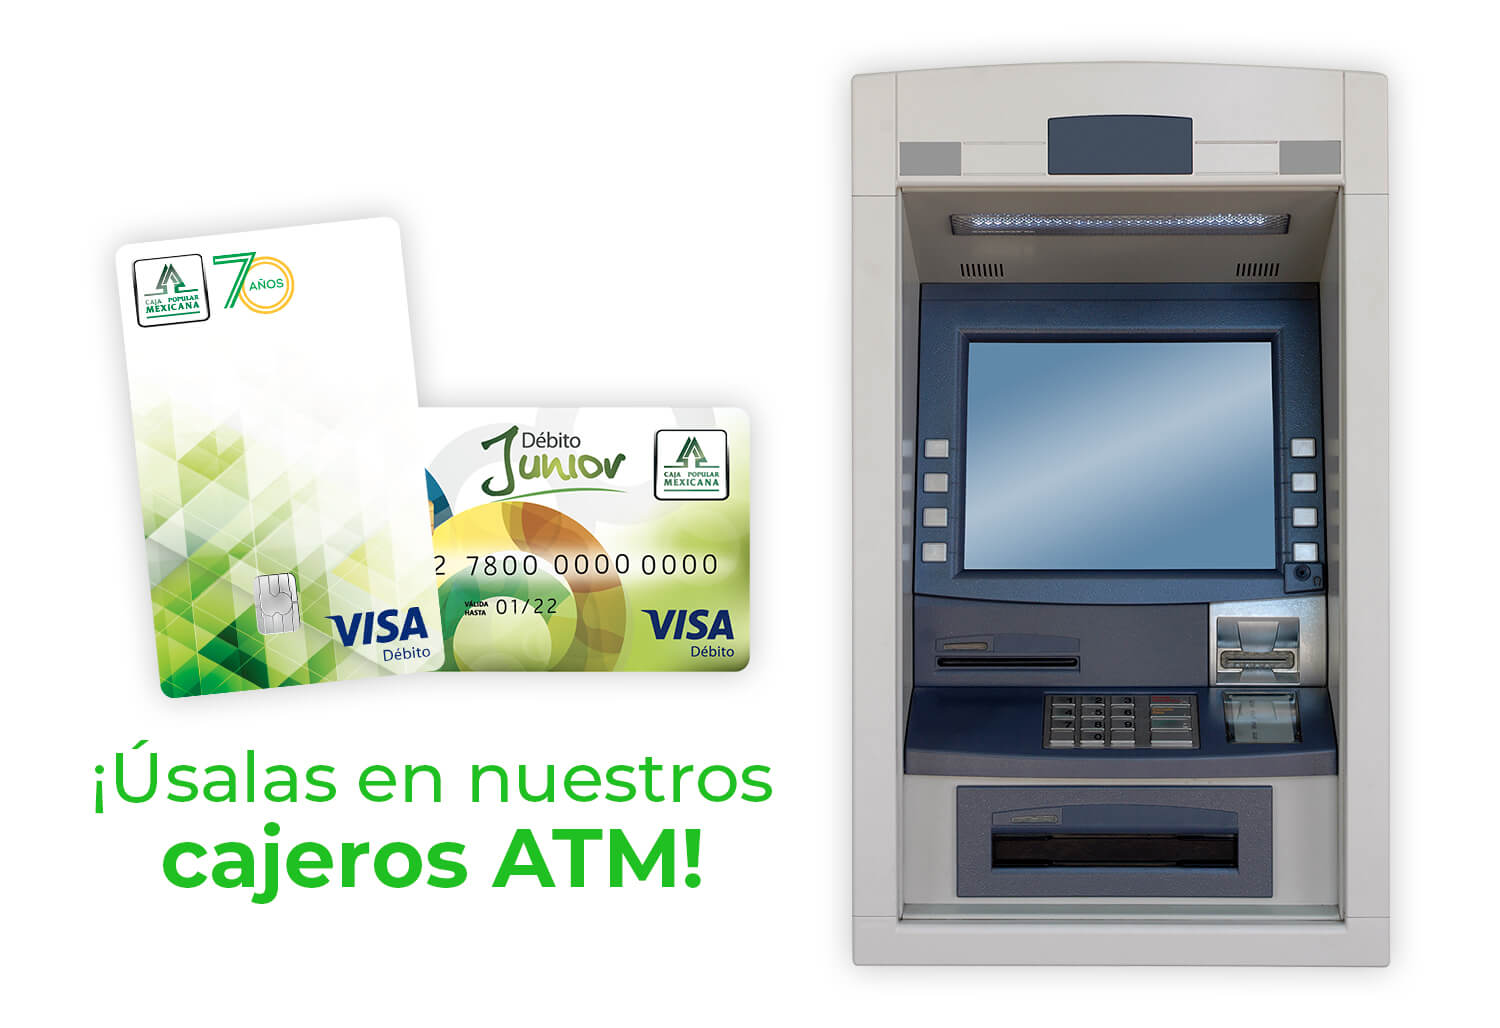 Usa tus tarjetas en nuestros cajeros ATM